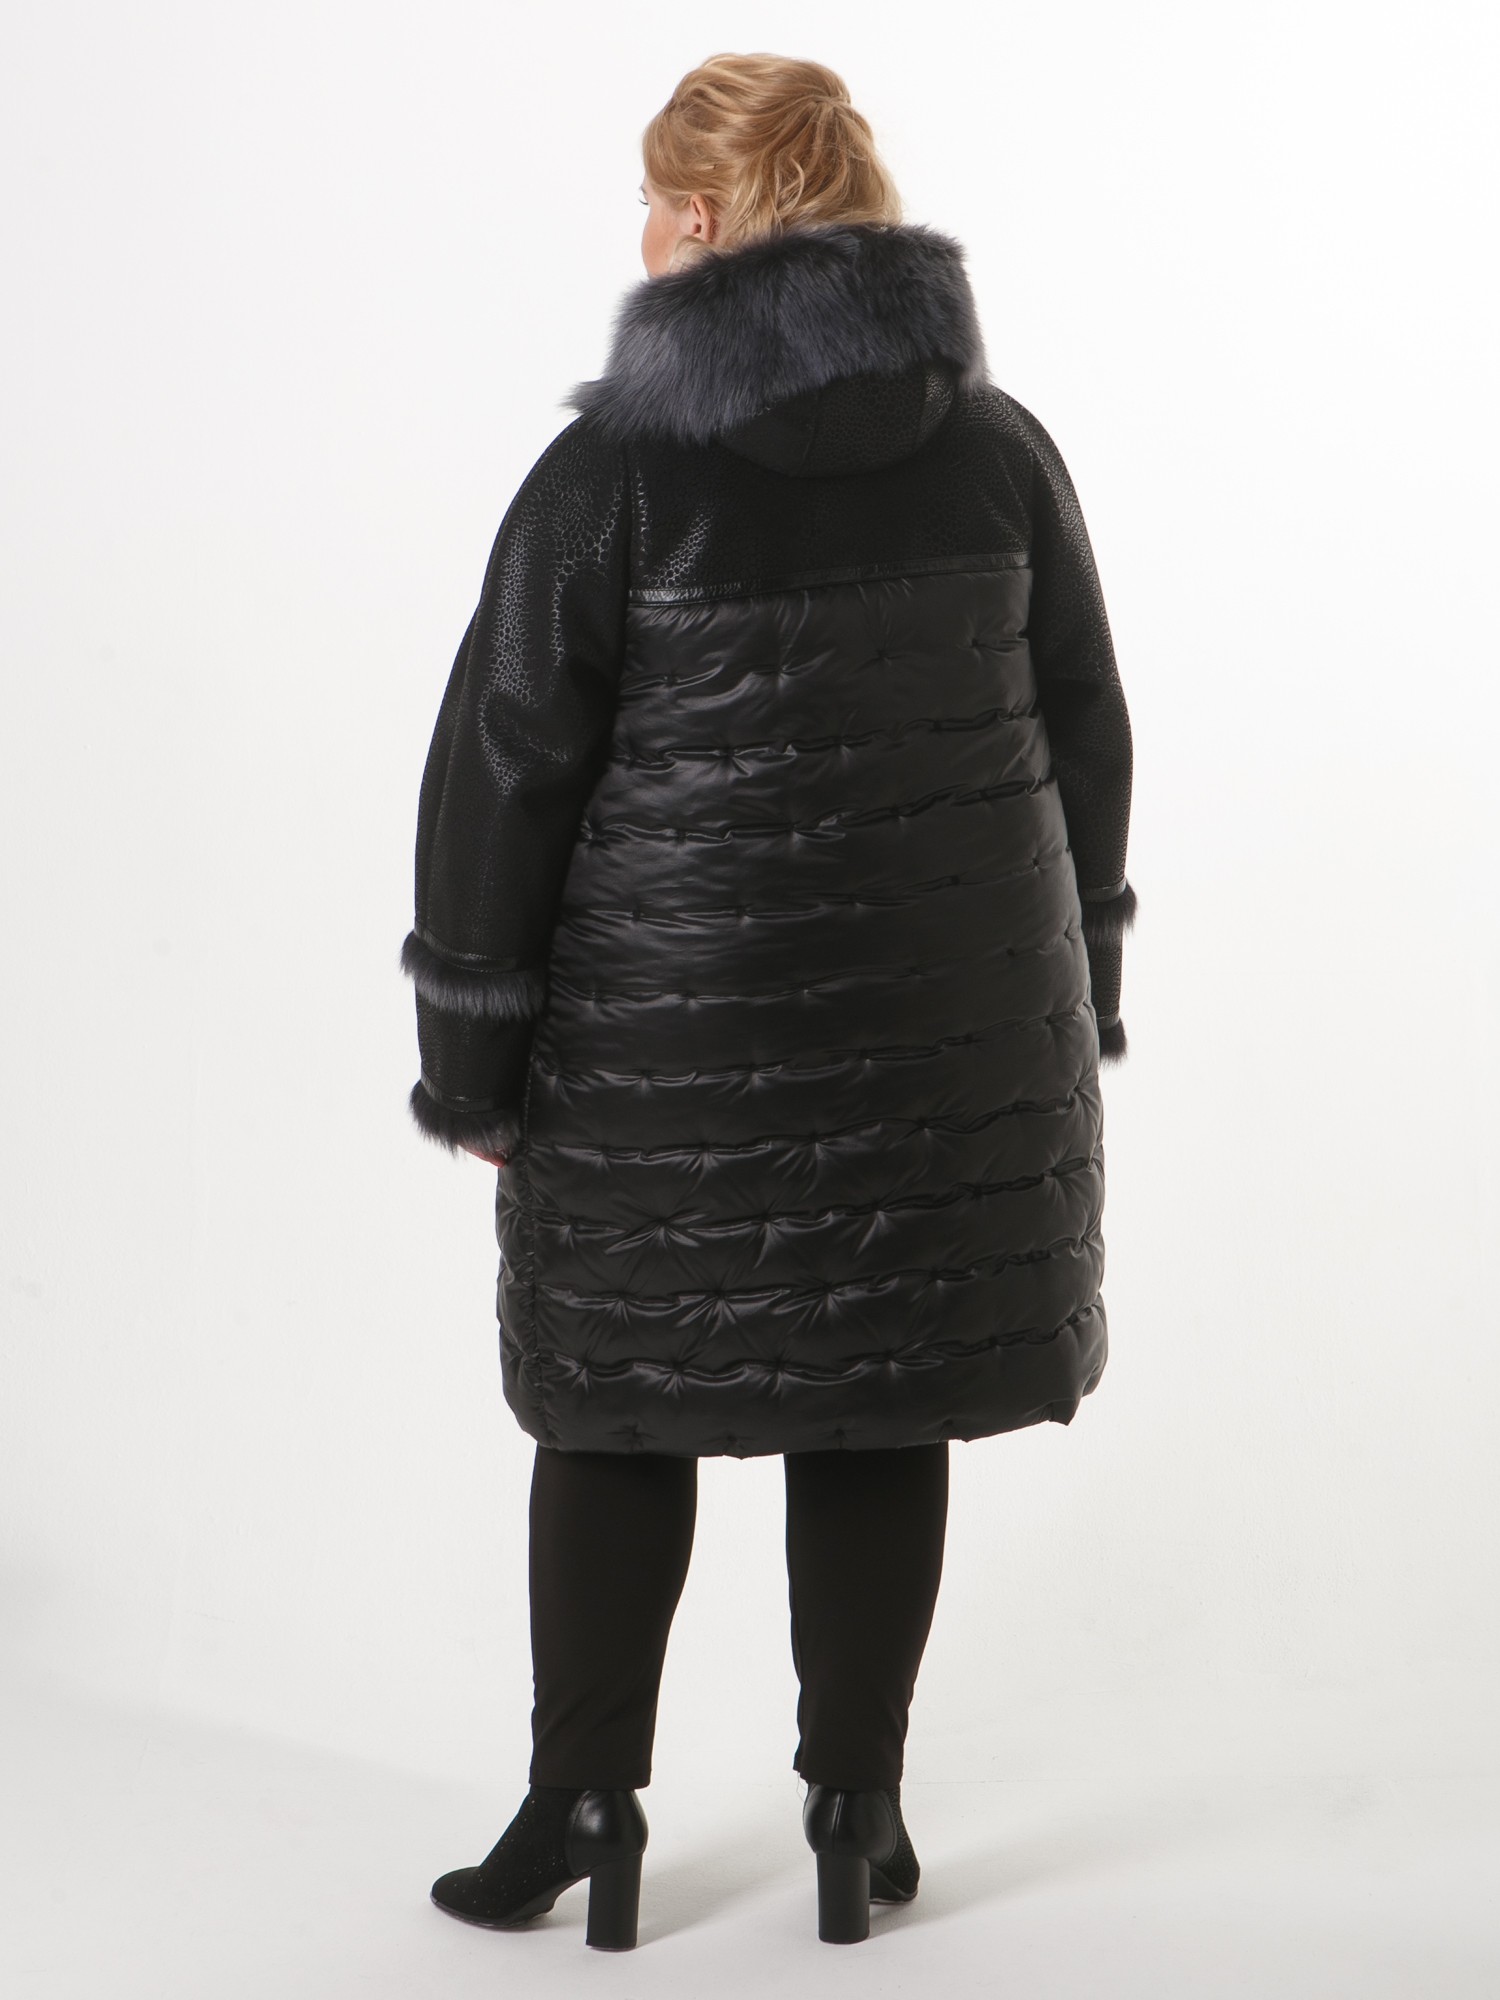 Молодежная дубленка комбинированная со стежкой в горошек, цвет черный в интернет-магазине Фабрики Тревери